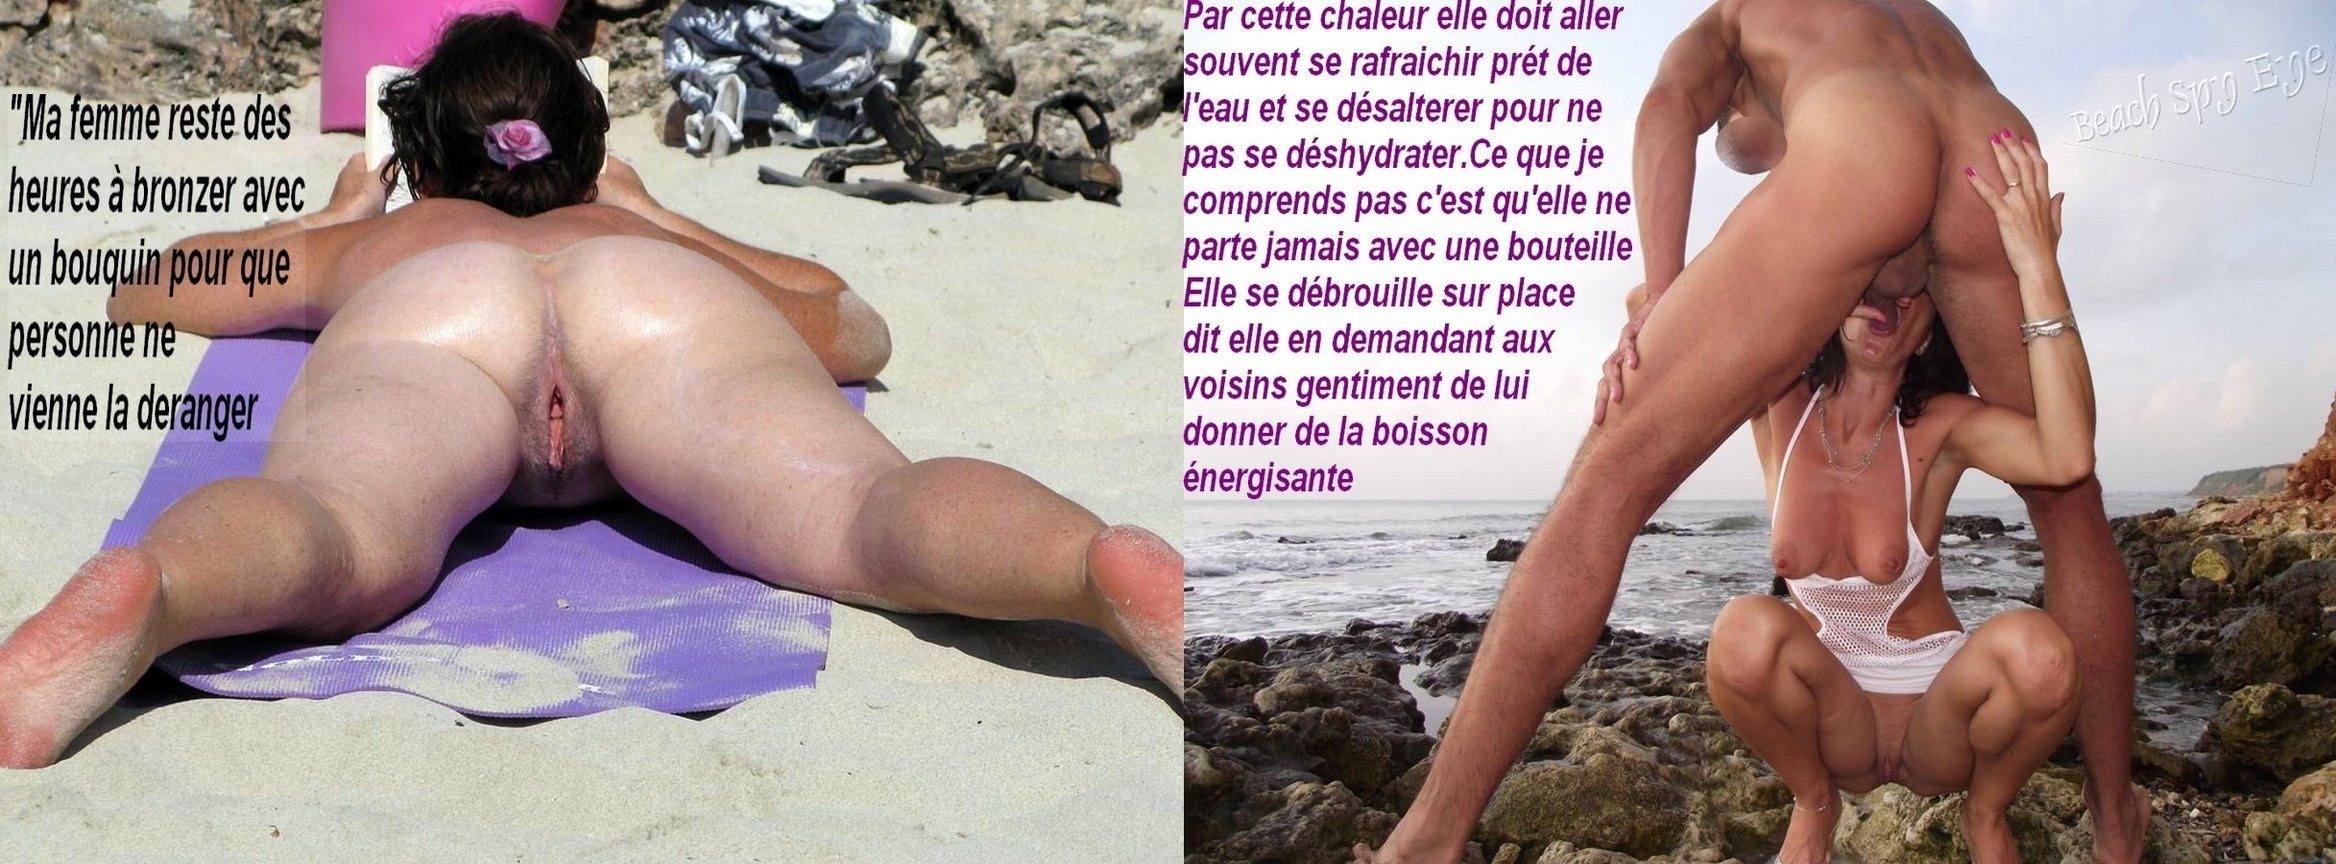 жена пляж порно фото 80